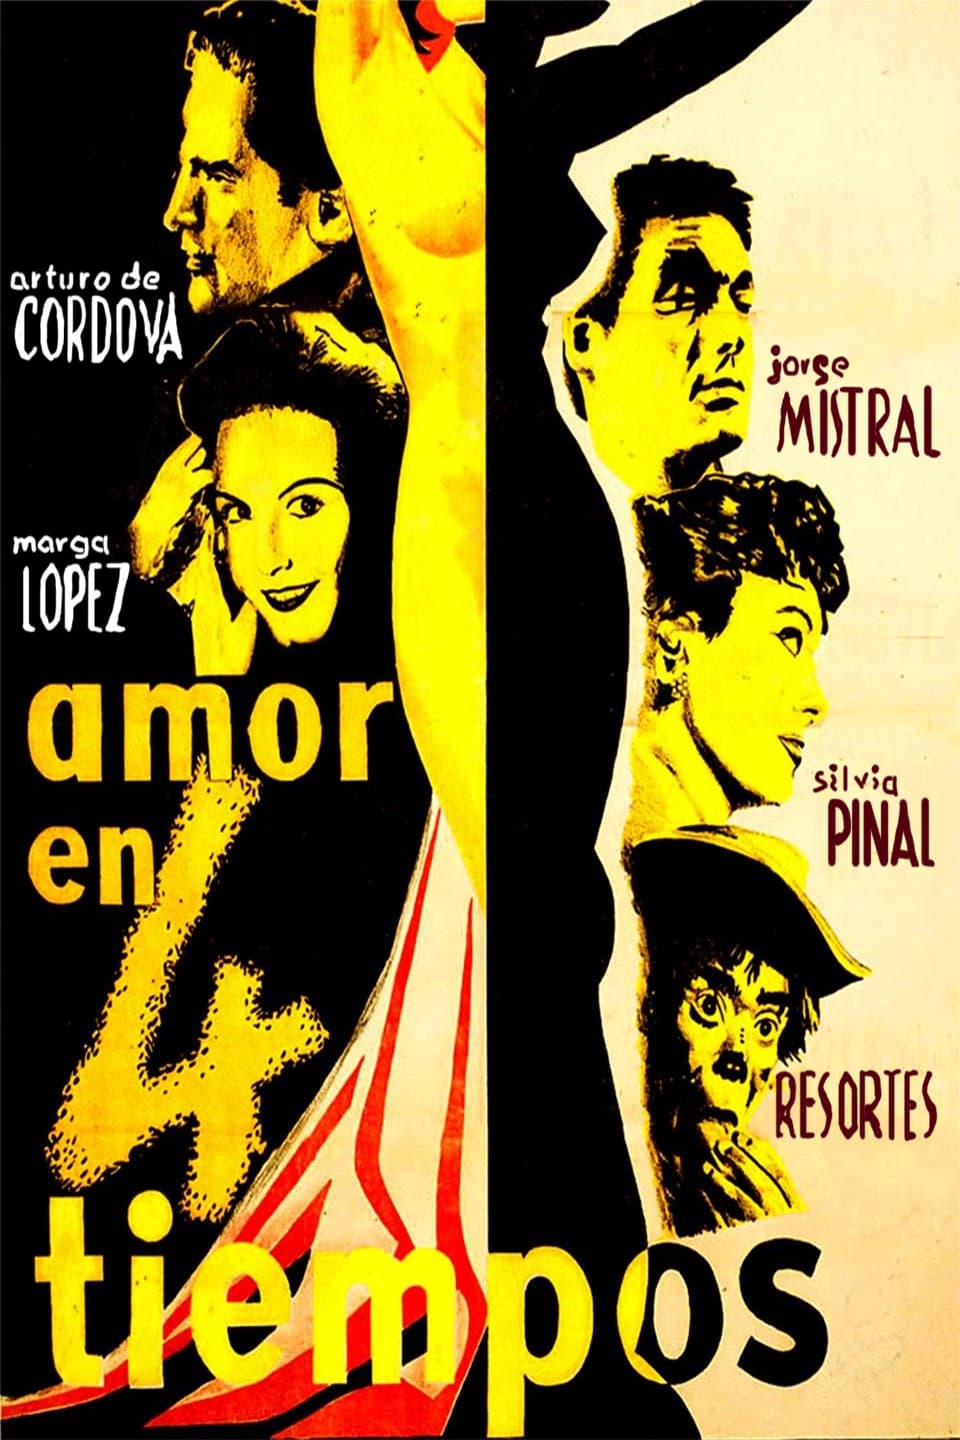 Amor en cuatro tiempos (1955)